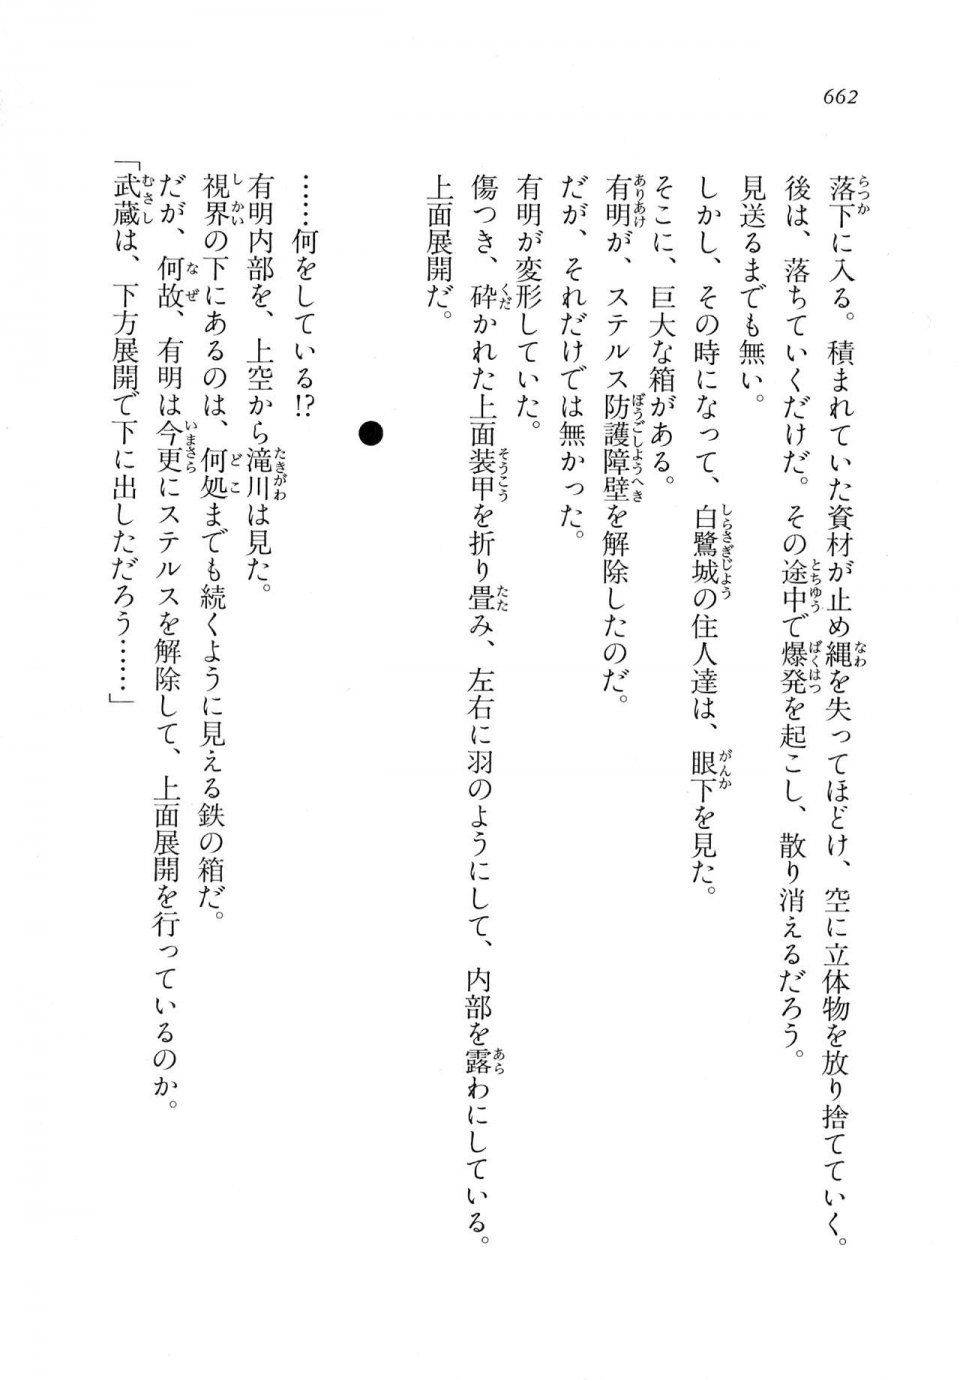 Kyoukai Senjou no Horizon LN Vol 11(5A) - Photo #662